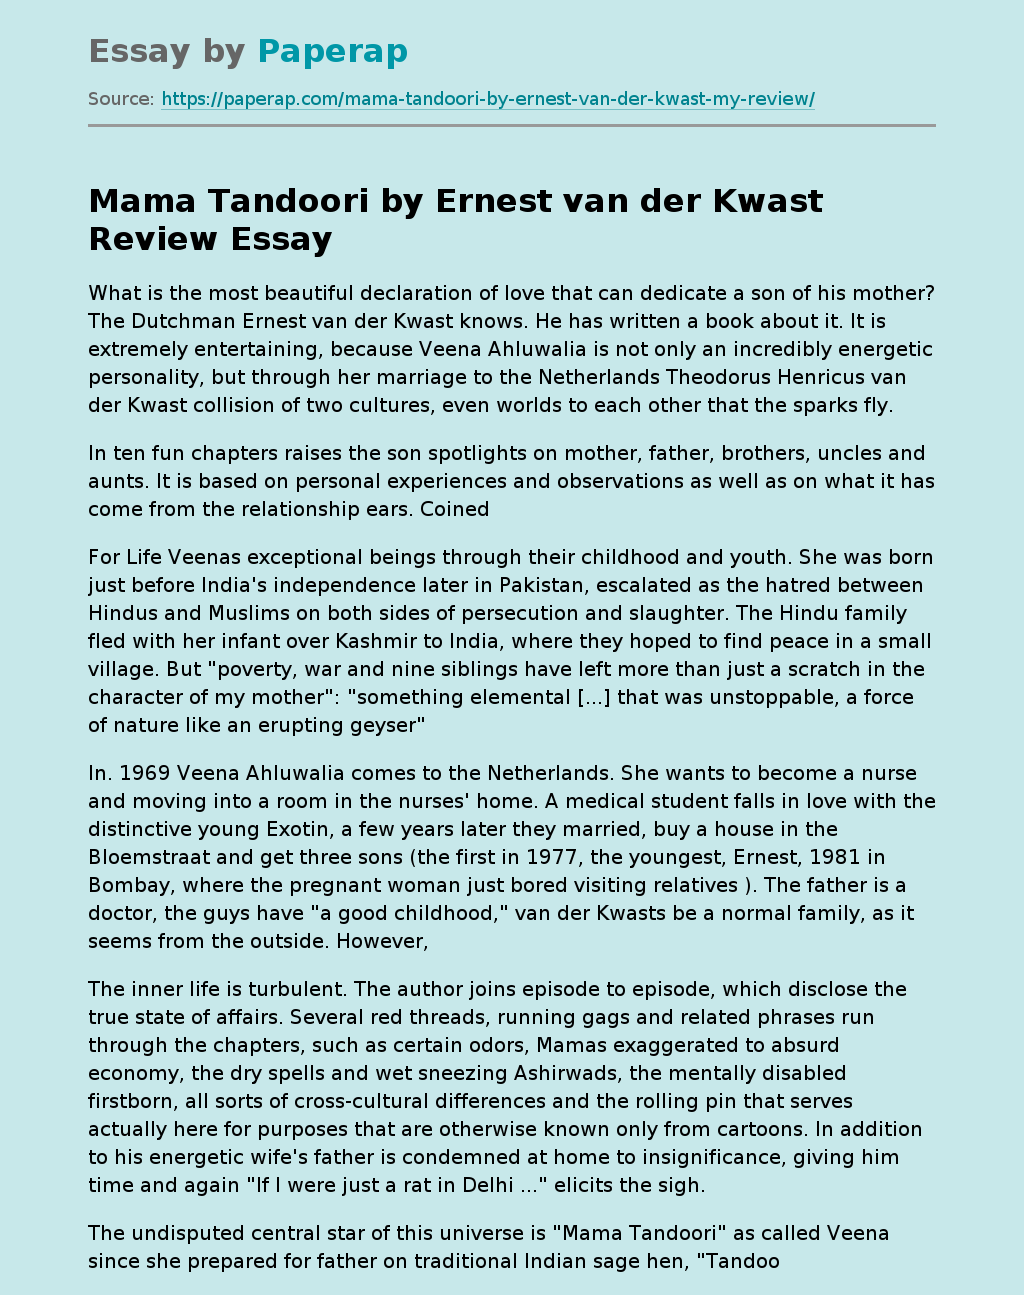 Mama Tandoori by Ernest van der Kwast Review